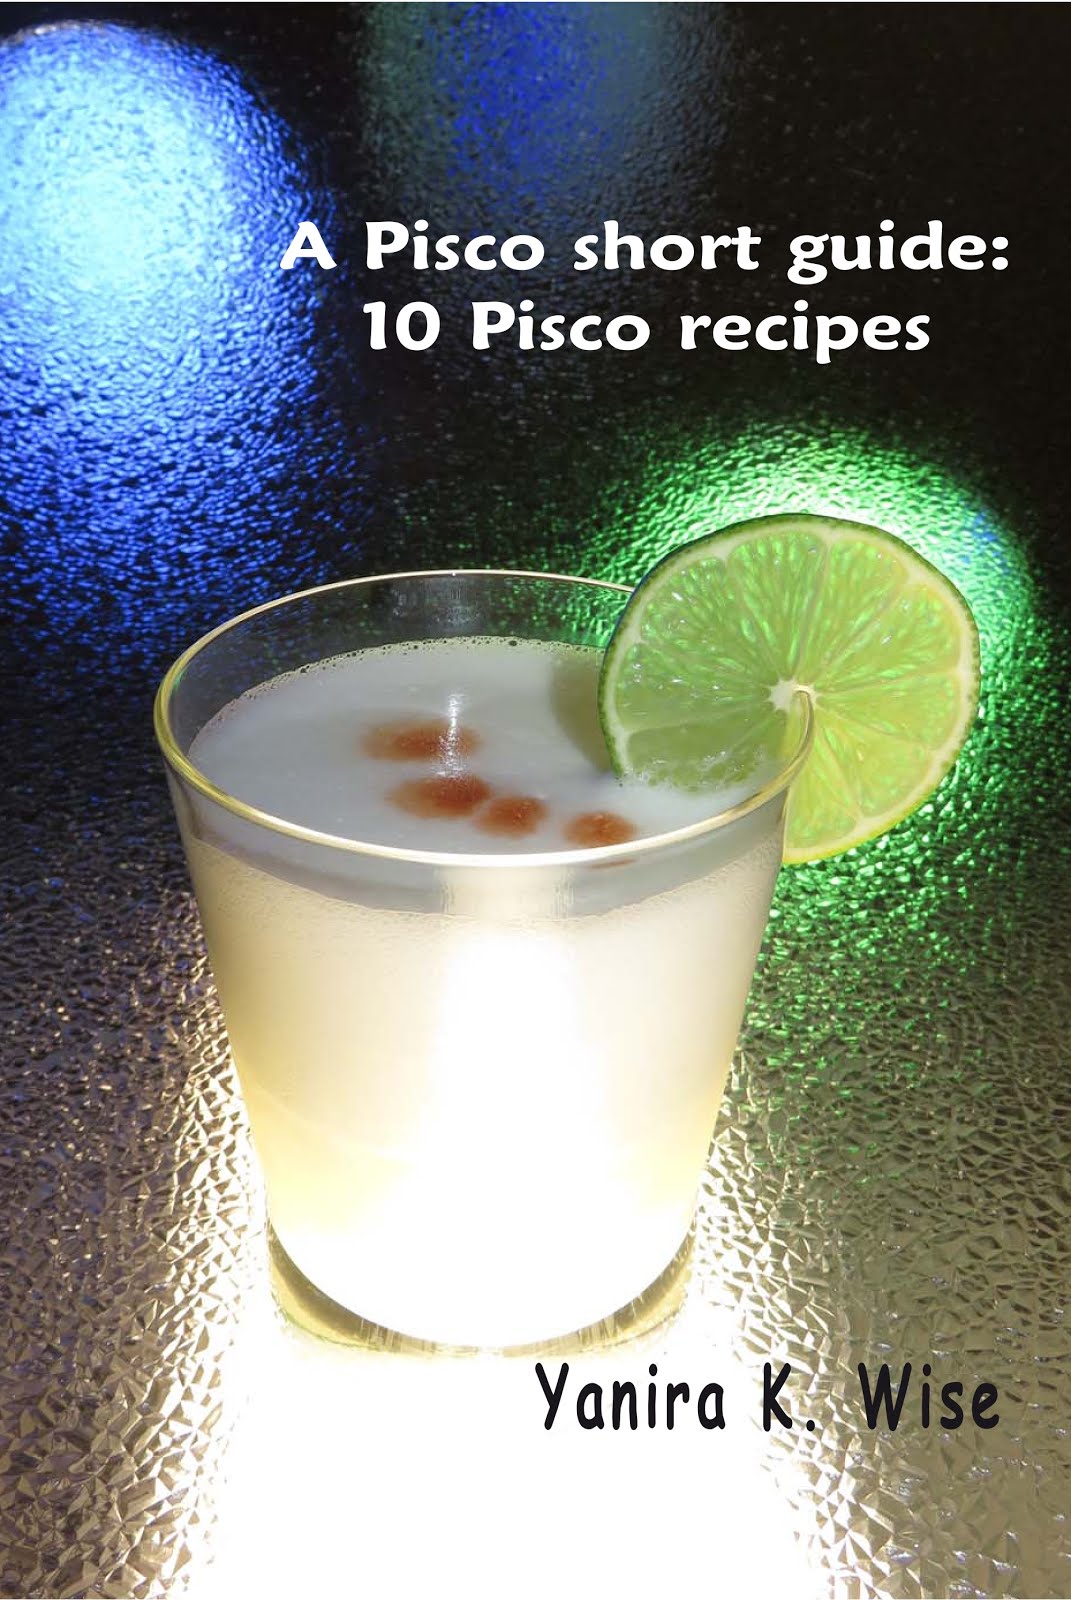 A Short Guide to Pisco: 10 Pisco Recipes